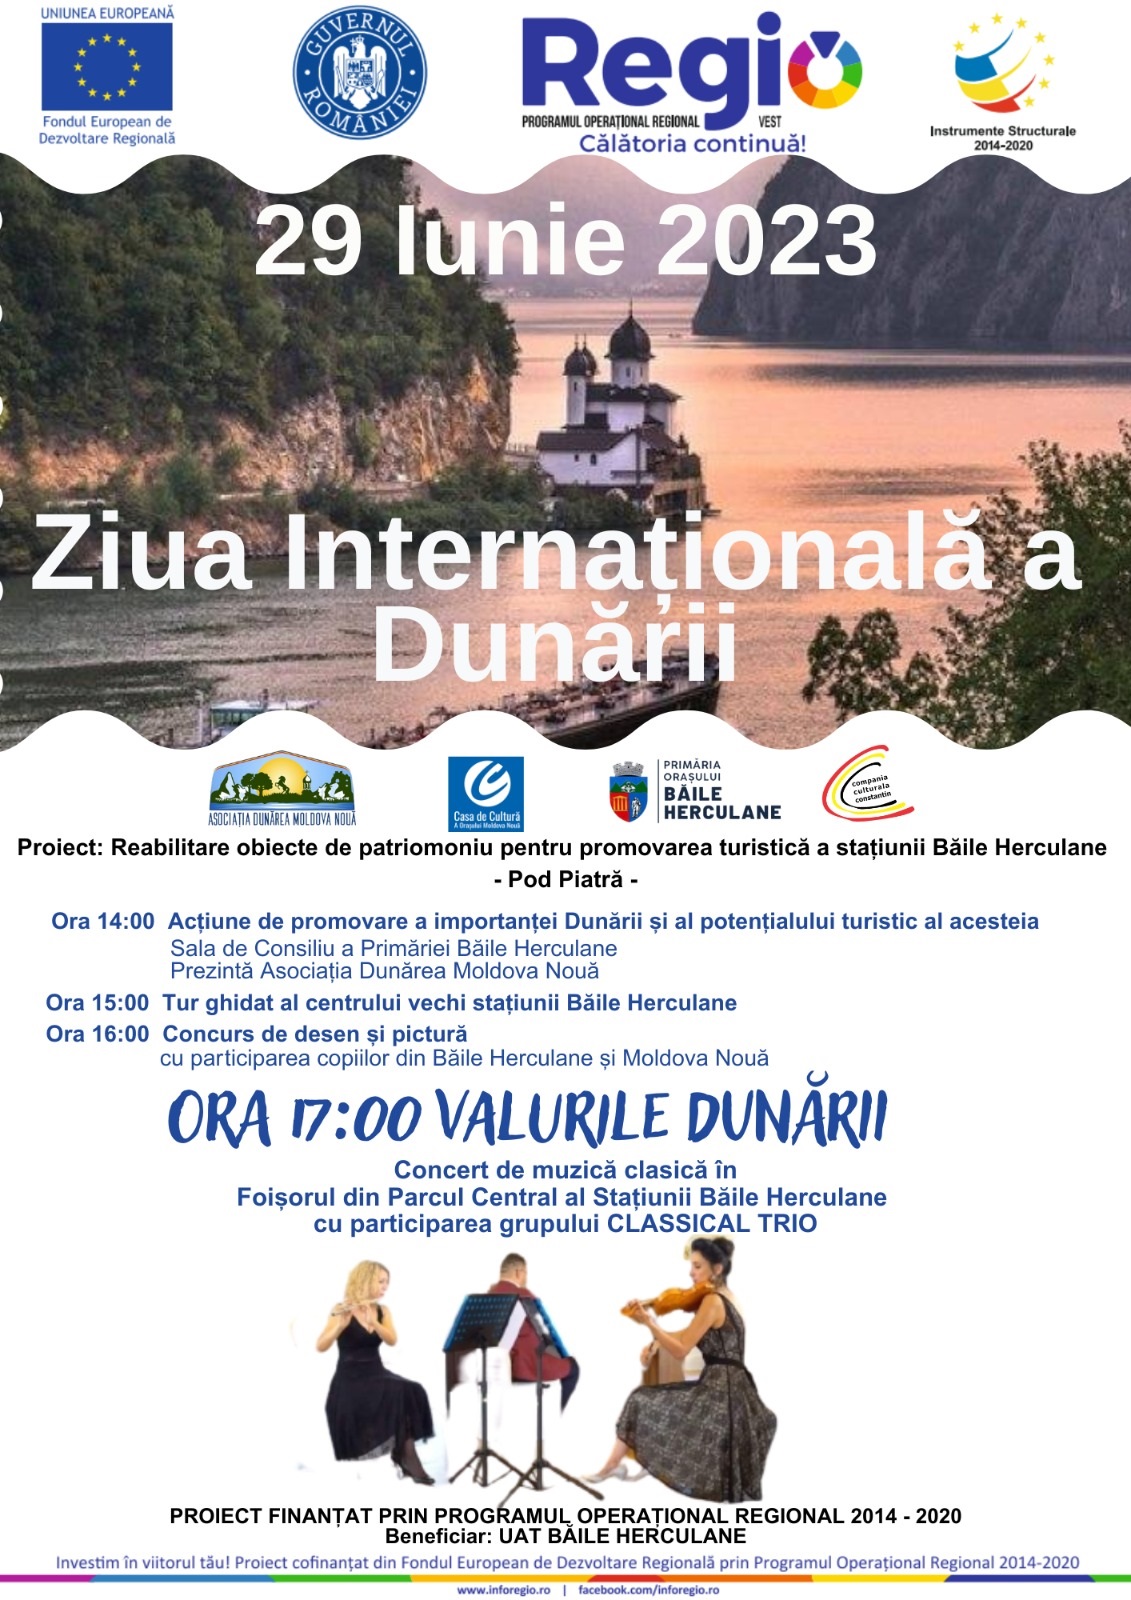 „Valurile Dunării” – concert de muzică clasică la Băile Herculane